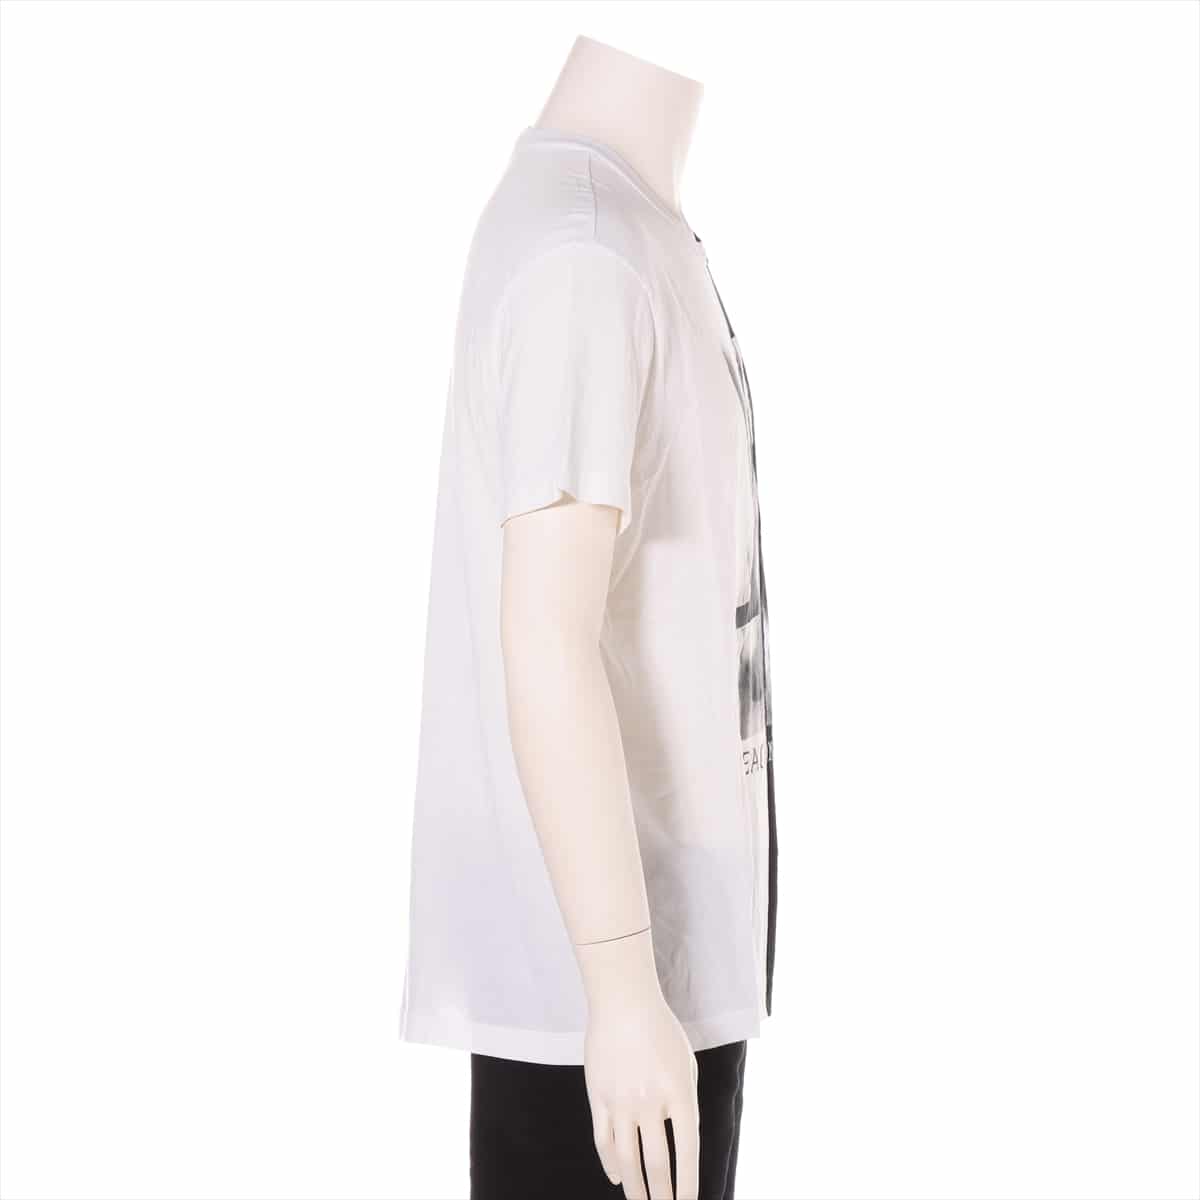 ルイヴィトン RM182 コットン Tシャツ XS メンズ ブラック×ホワイト